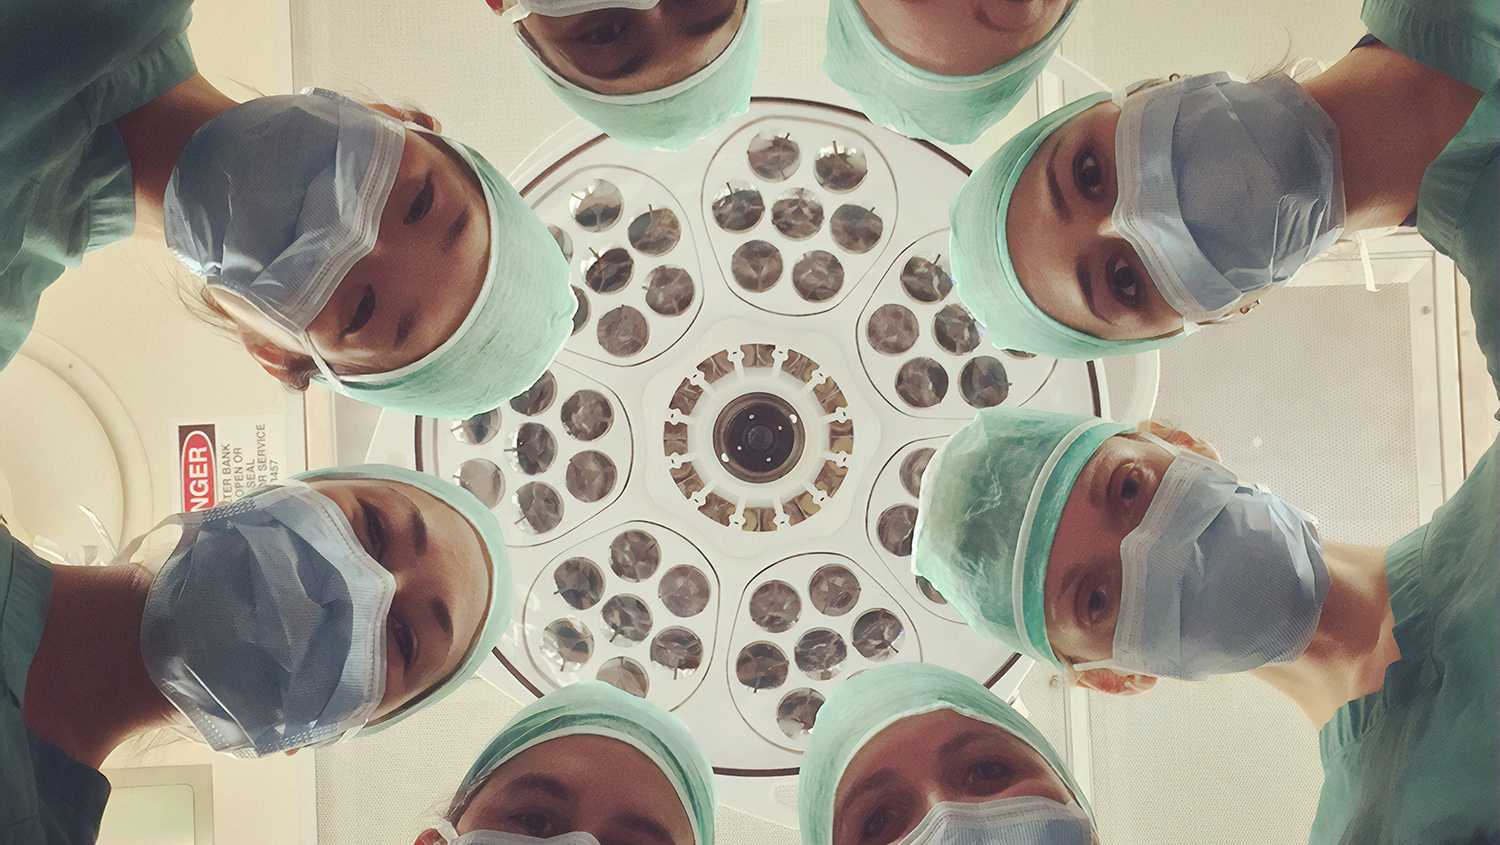 8 personer med kirurgrockar och munskydd böjer sig fram för att titta ner på en patient utanför bild. Ovanför deras huvuden syns taket.